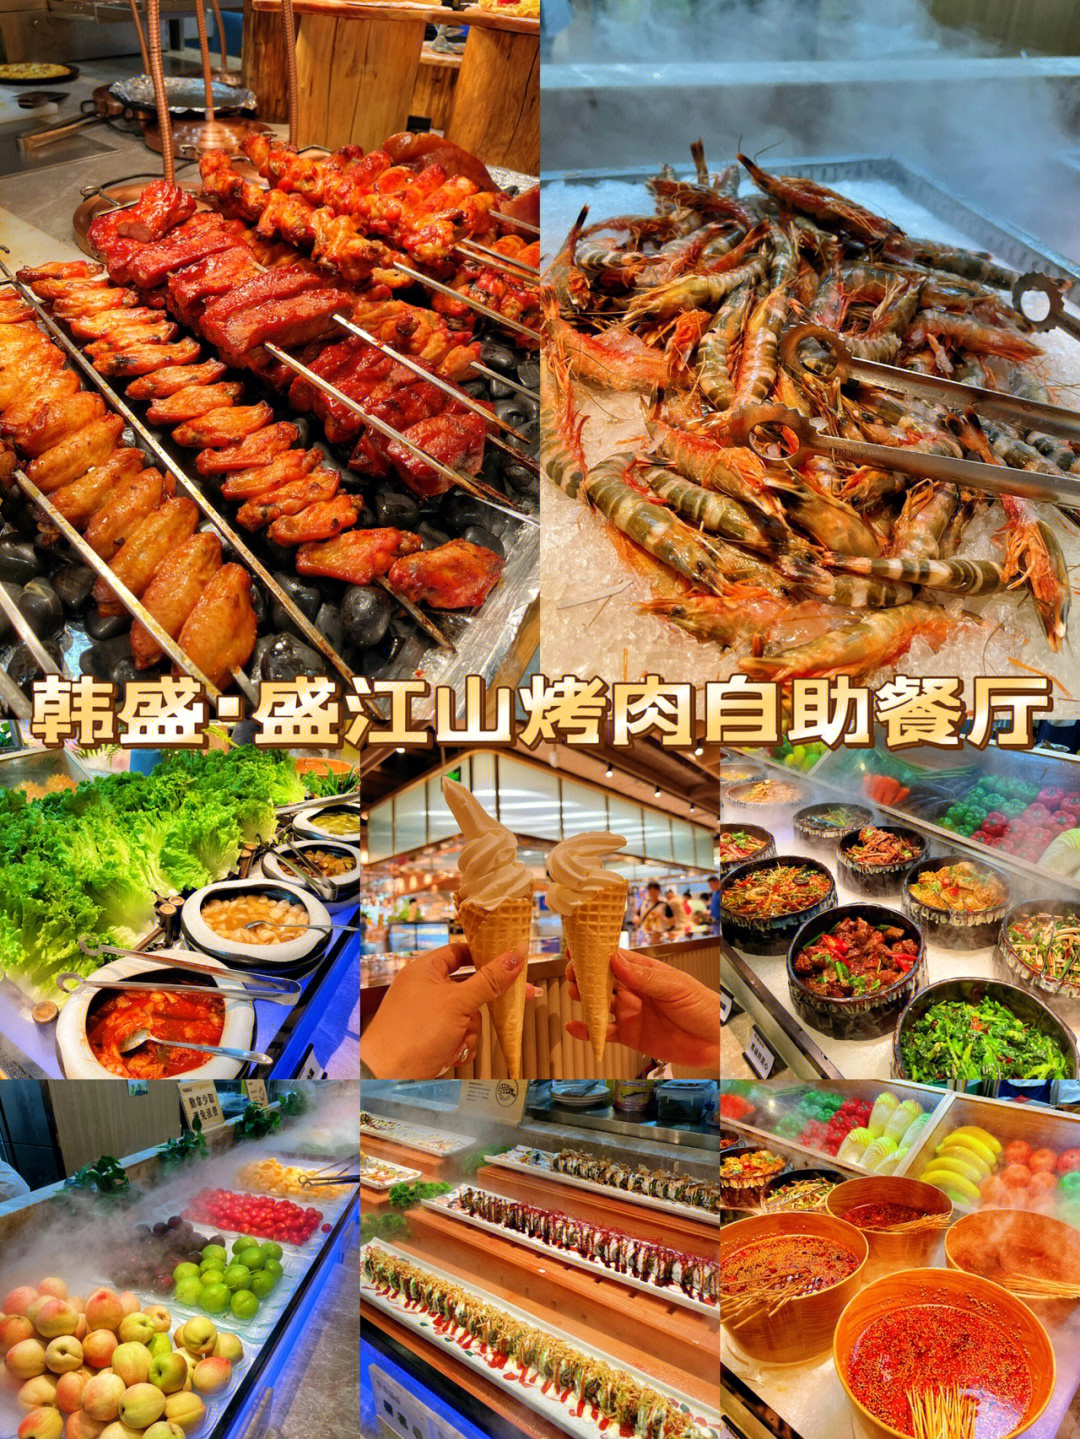 大同盛江山自助烤肉图片